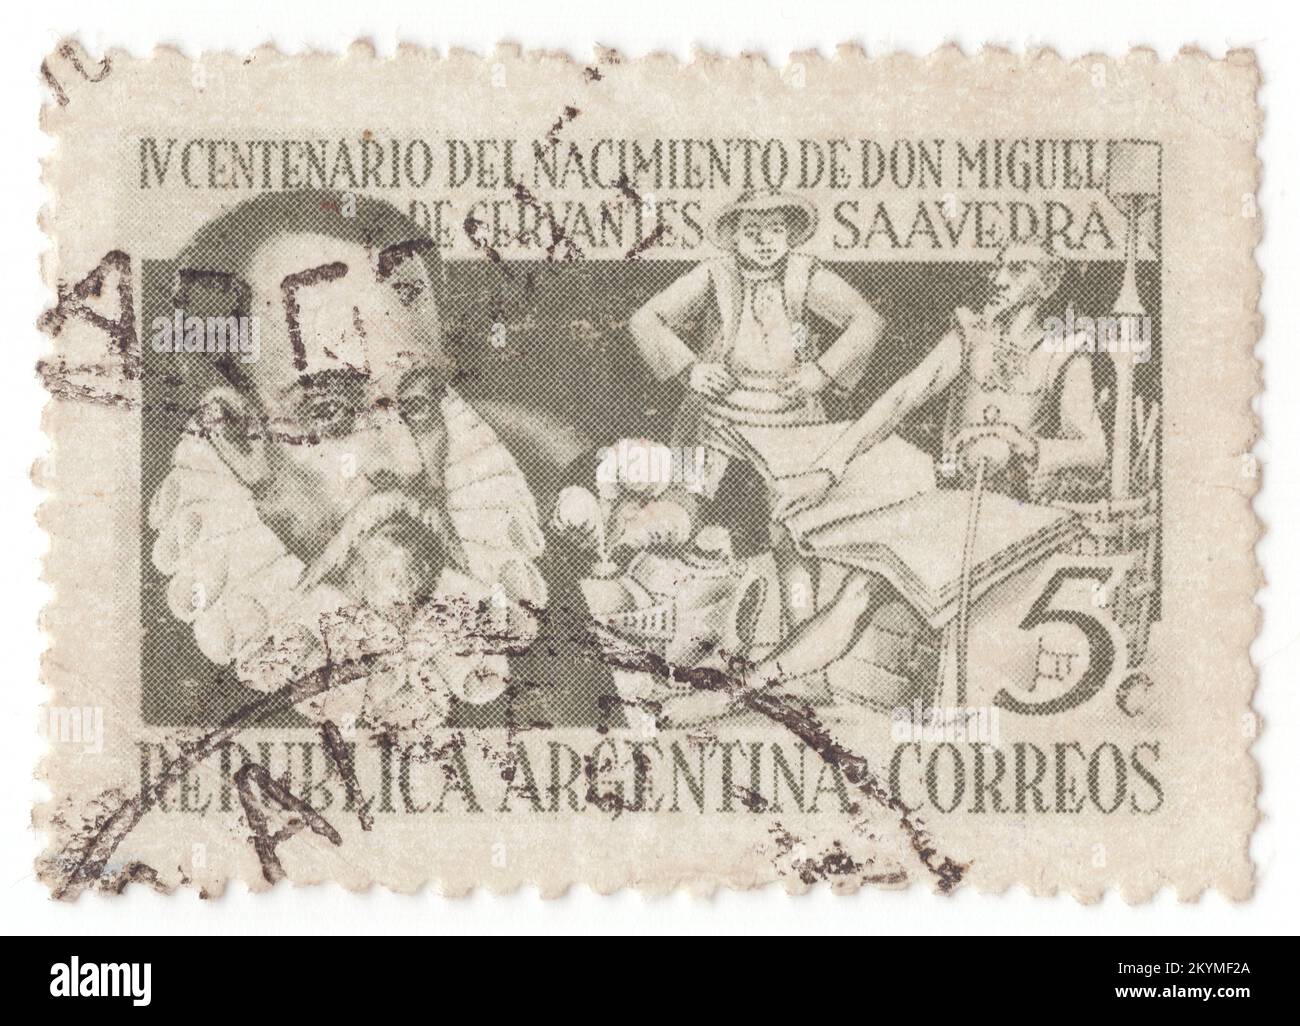 ARGENTINIEN - 1947 Uhr: 5 olivgrüner Briefmarken mit Porträt von Cervantes und Figuren von Don Quijote. Miguel de Cervantes Saavedra, Dramatiker und Dichter, zum 400.. Geburtstag. Miguel de Cervantes Saavedra war ein früher, moderner spanischer Schriftsteller, der weithin als der größte Schriftsteller der spanischen Sprache und einer der weltweit führenden Schriftsteller gilt. Er ist am besten bekannt für seinen Roman Don Quijote, ein Werk, das oft sowohl als erster moderner Roman als auch als einer der Grundpfeiler der Weltliteratur bezeichnet wird Stockfoto